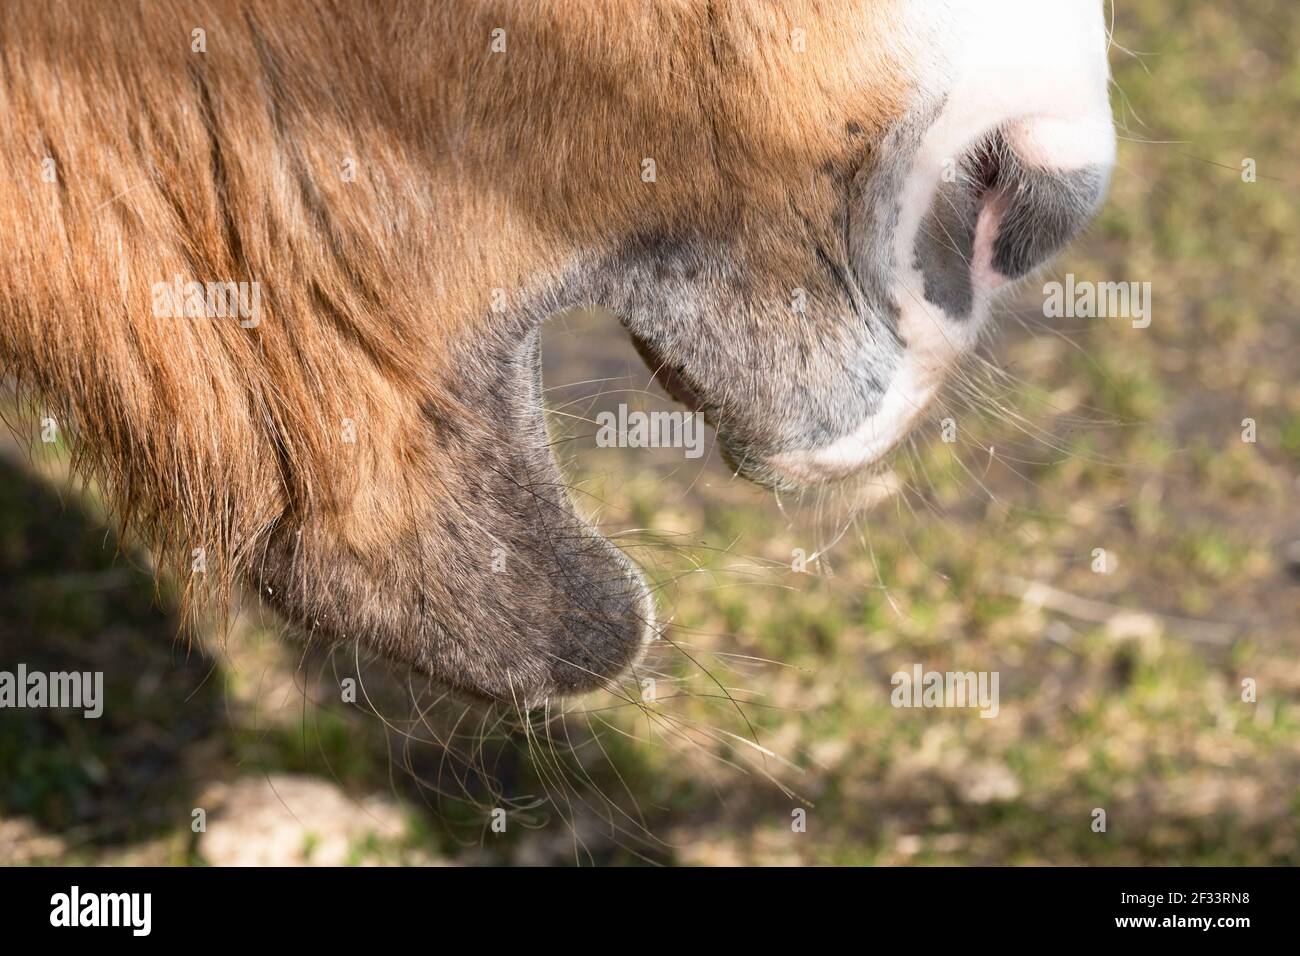 Vista laterale della bocca e delle labbra di un singolo cavallo di castagno con blaze bianche. L'animale sta masticando e la sua bocca è aperta. Profondità di campo ridotta Foto Stock